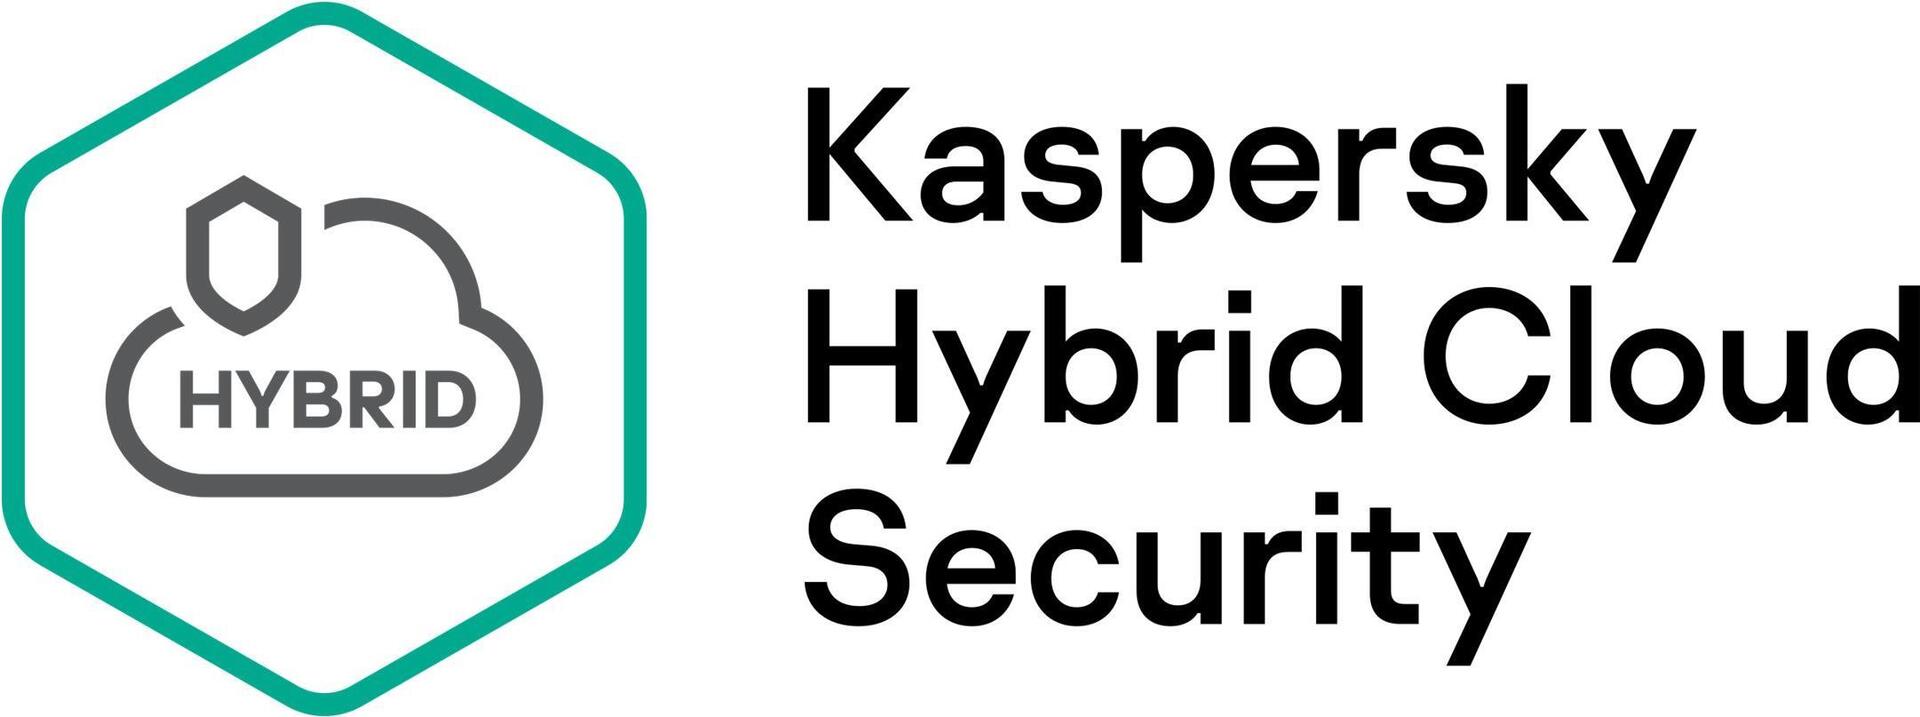 Kaspersky Hybrid Cloud Security (KL4554XASF8)